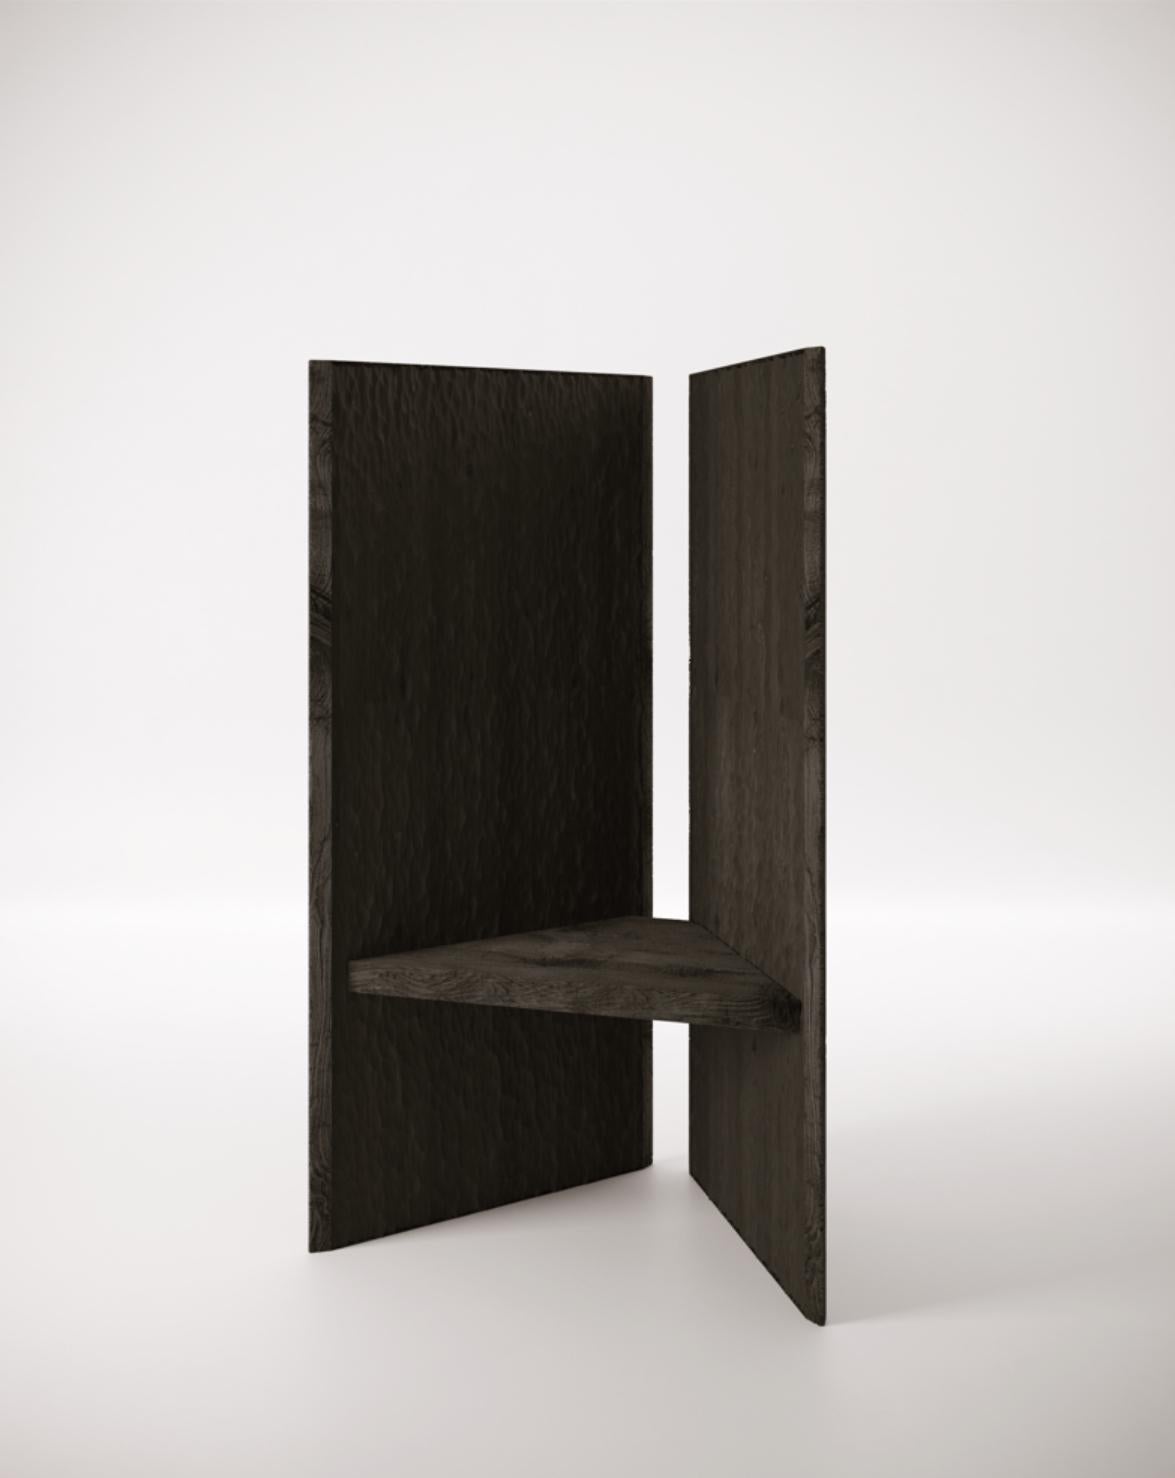 Geb throne par Studiopepe
Dimensions : L 150 x D 90 x H 73 cm
MATERIAL : Bois noir

L'agence de design à multiples facettes Studiopepe a été fondée à Milan en 2006. Eclectique, voguish, c'est la
Le projet a été conçu par Chiara di Pinto et Arianna